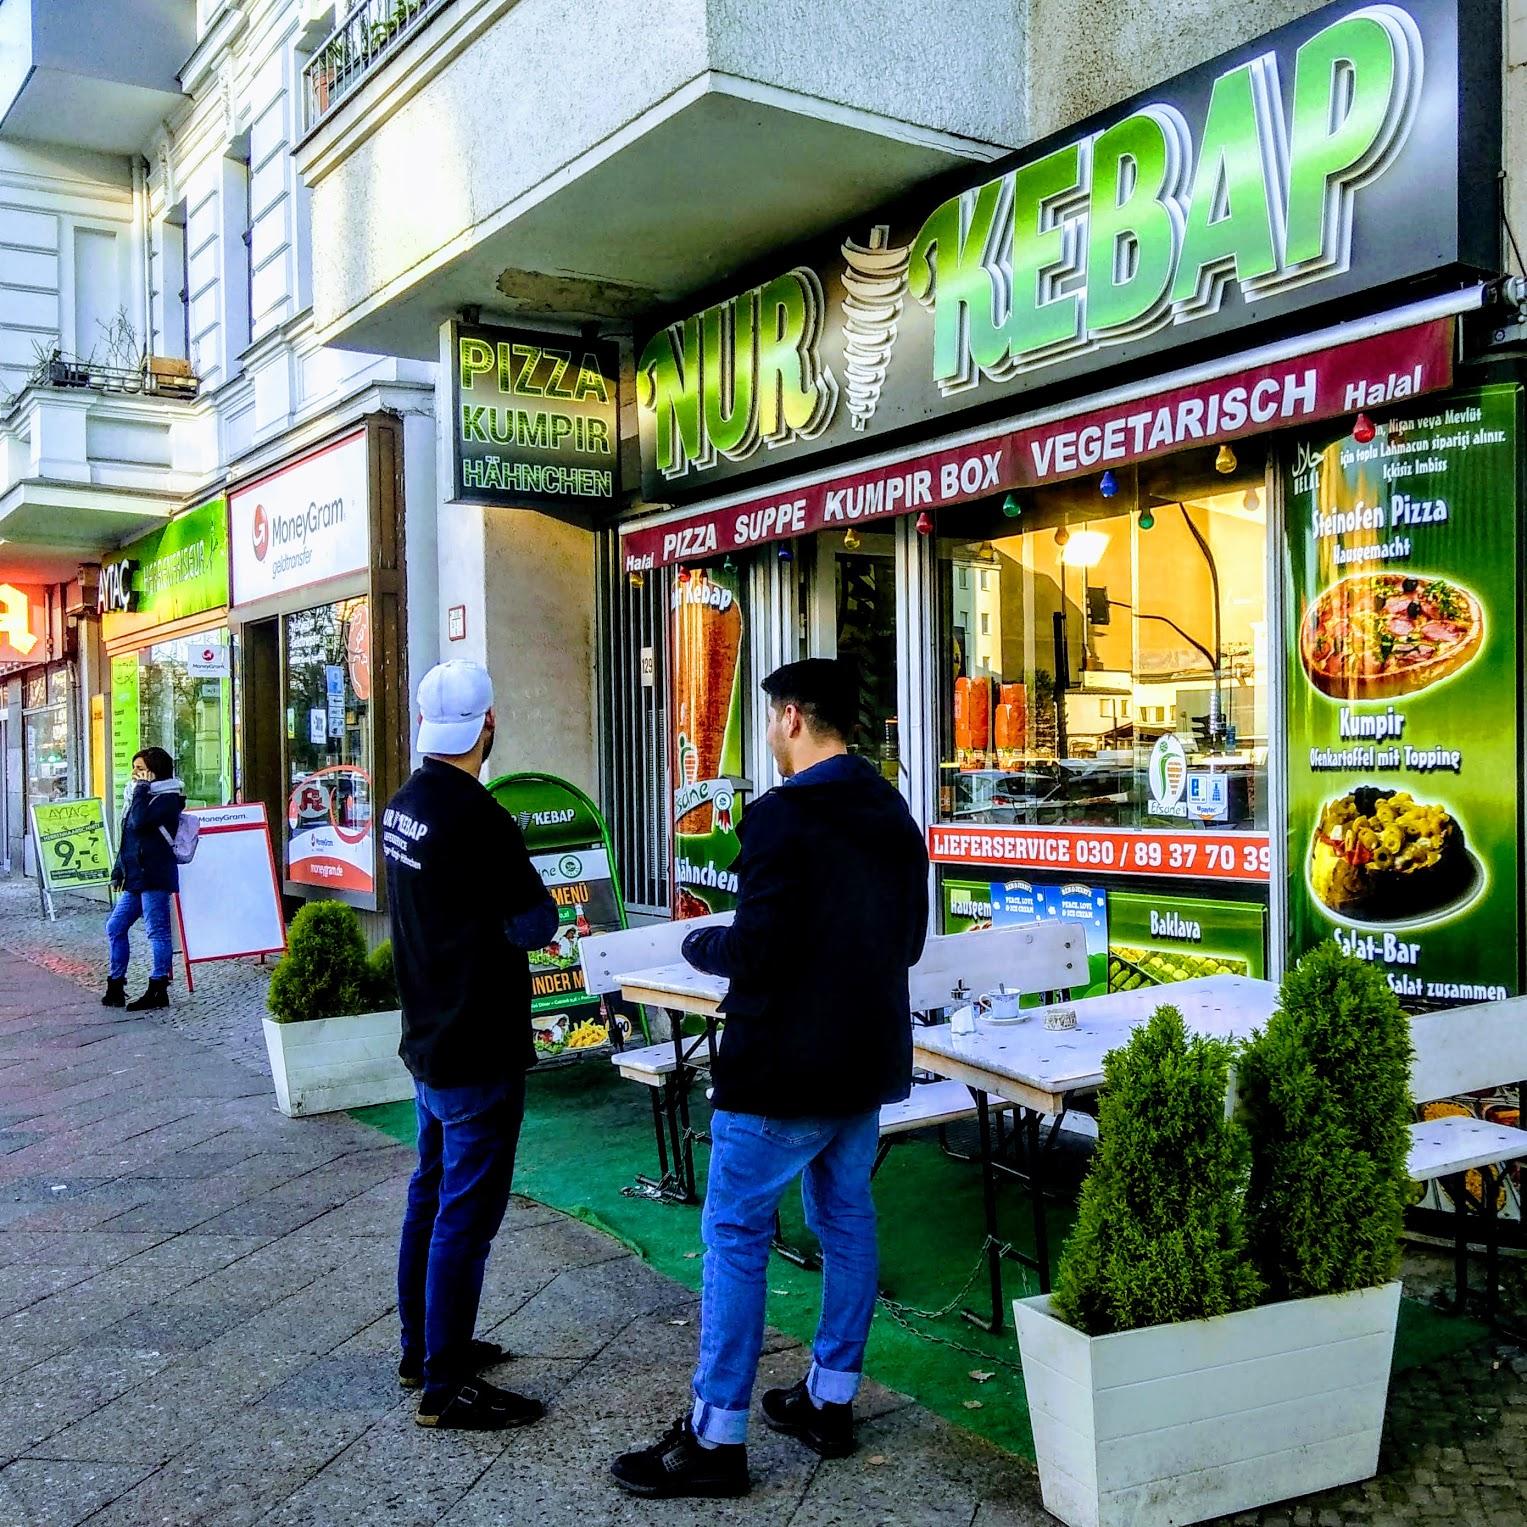 Restaurant "Nur Kebap" in Berlin